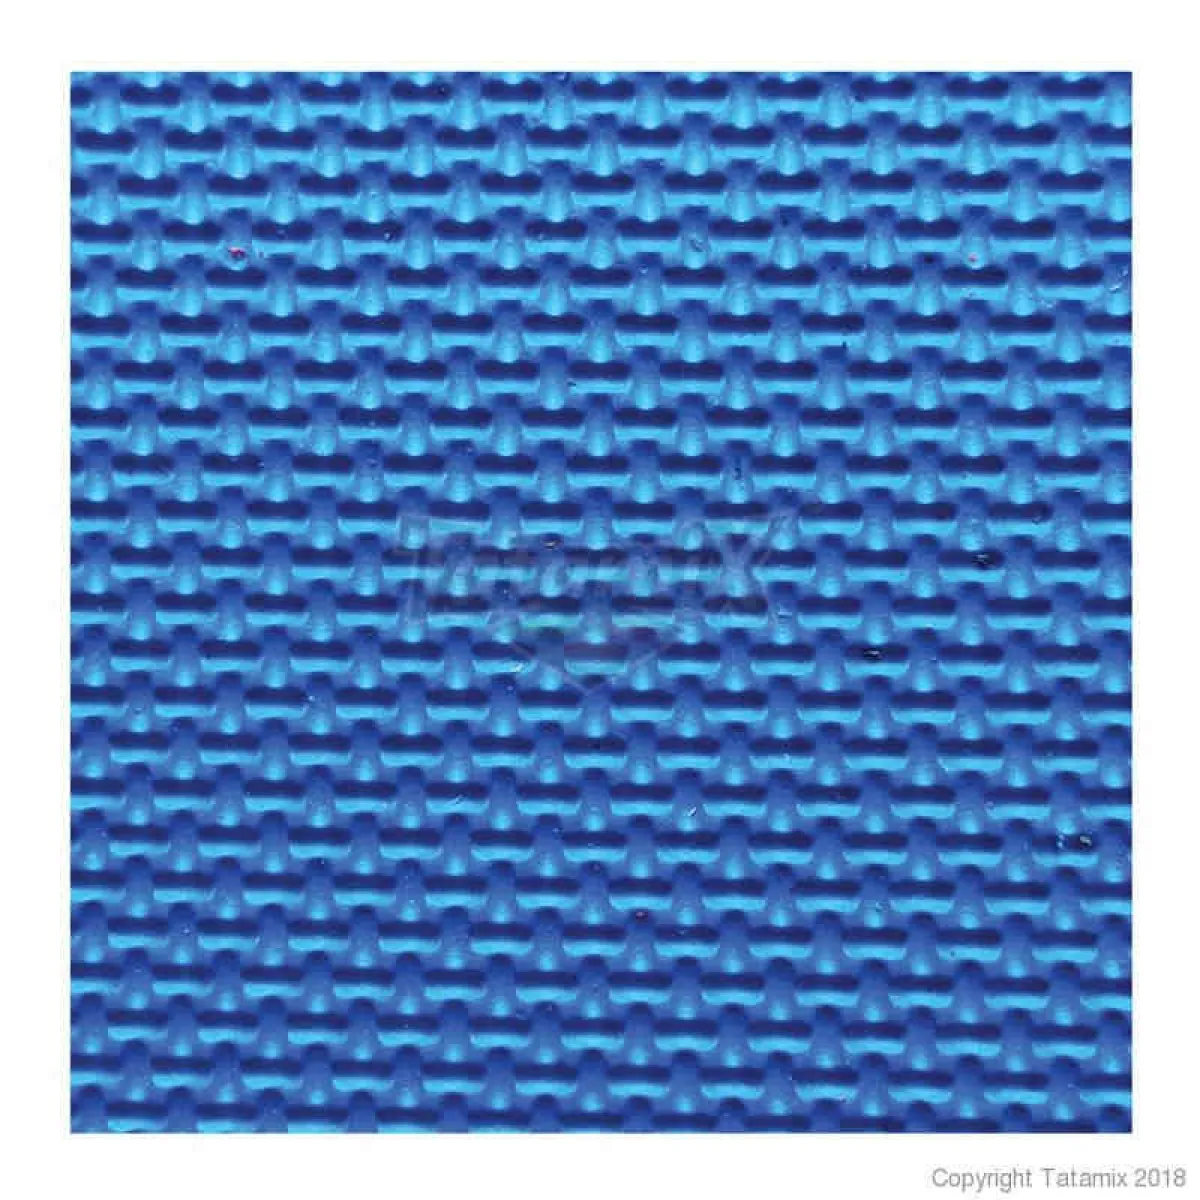 Tatami E40S mat blue/red 100 cm x 100 cm x 4 cm